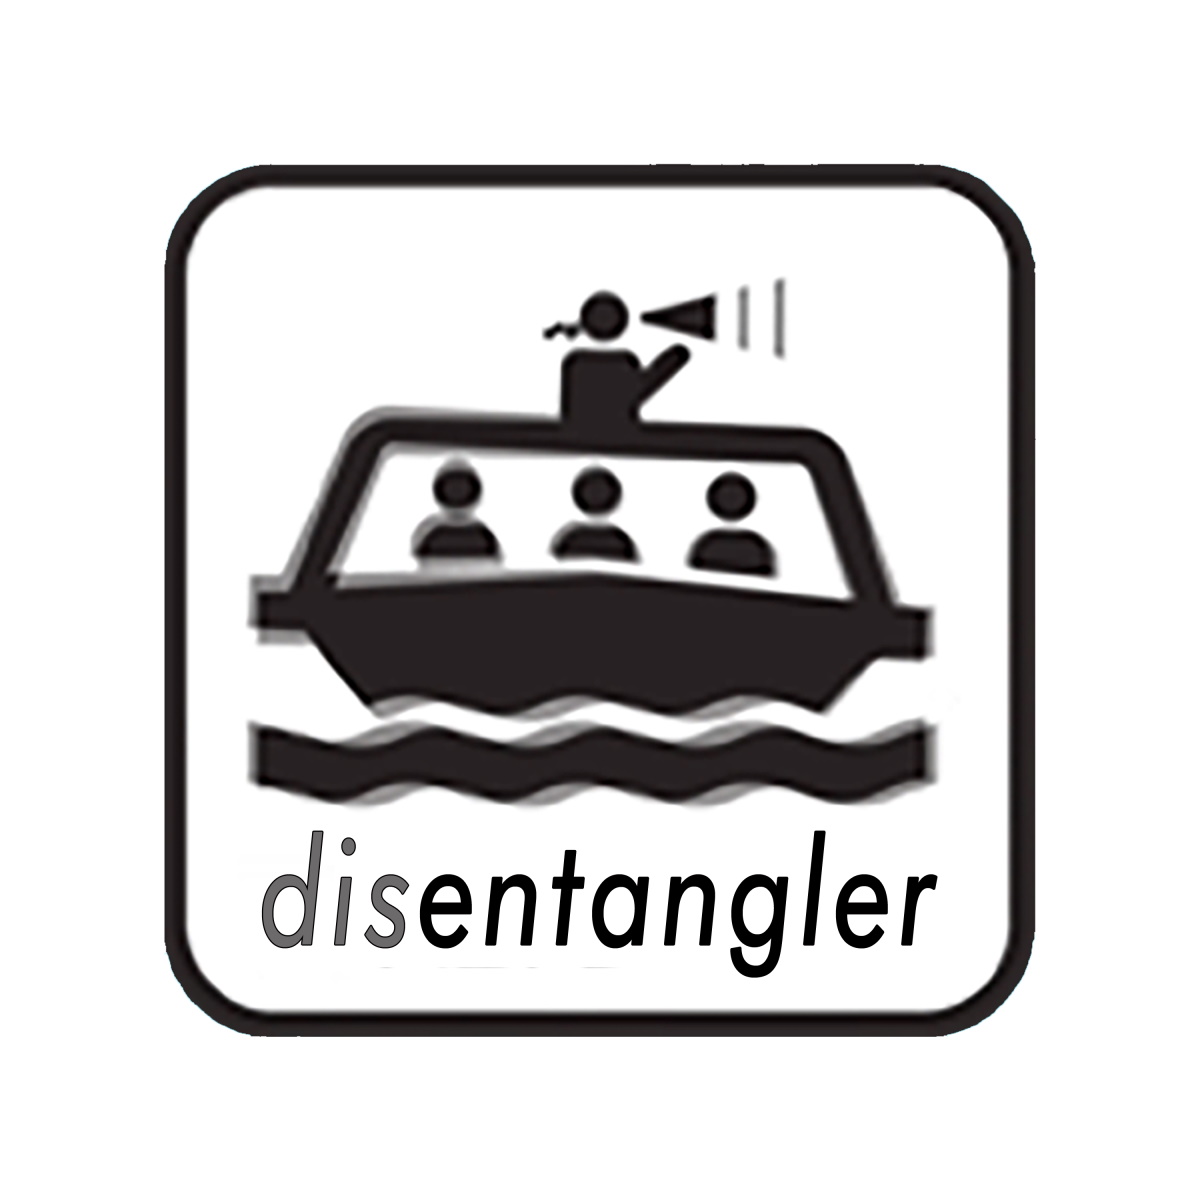 Disentangler logo